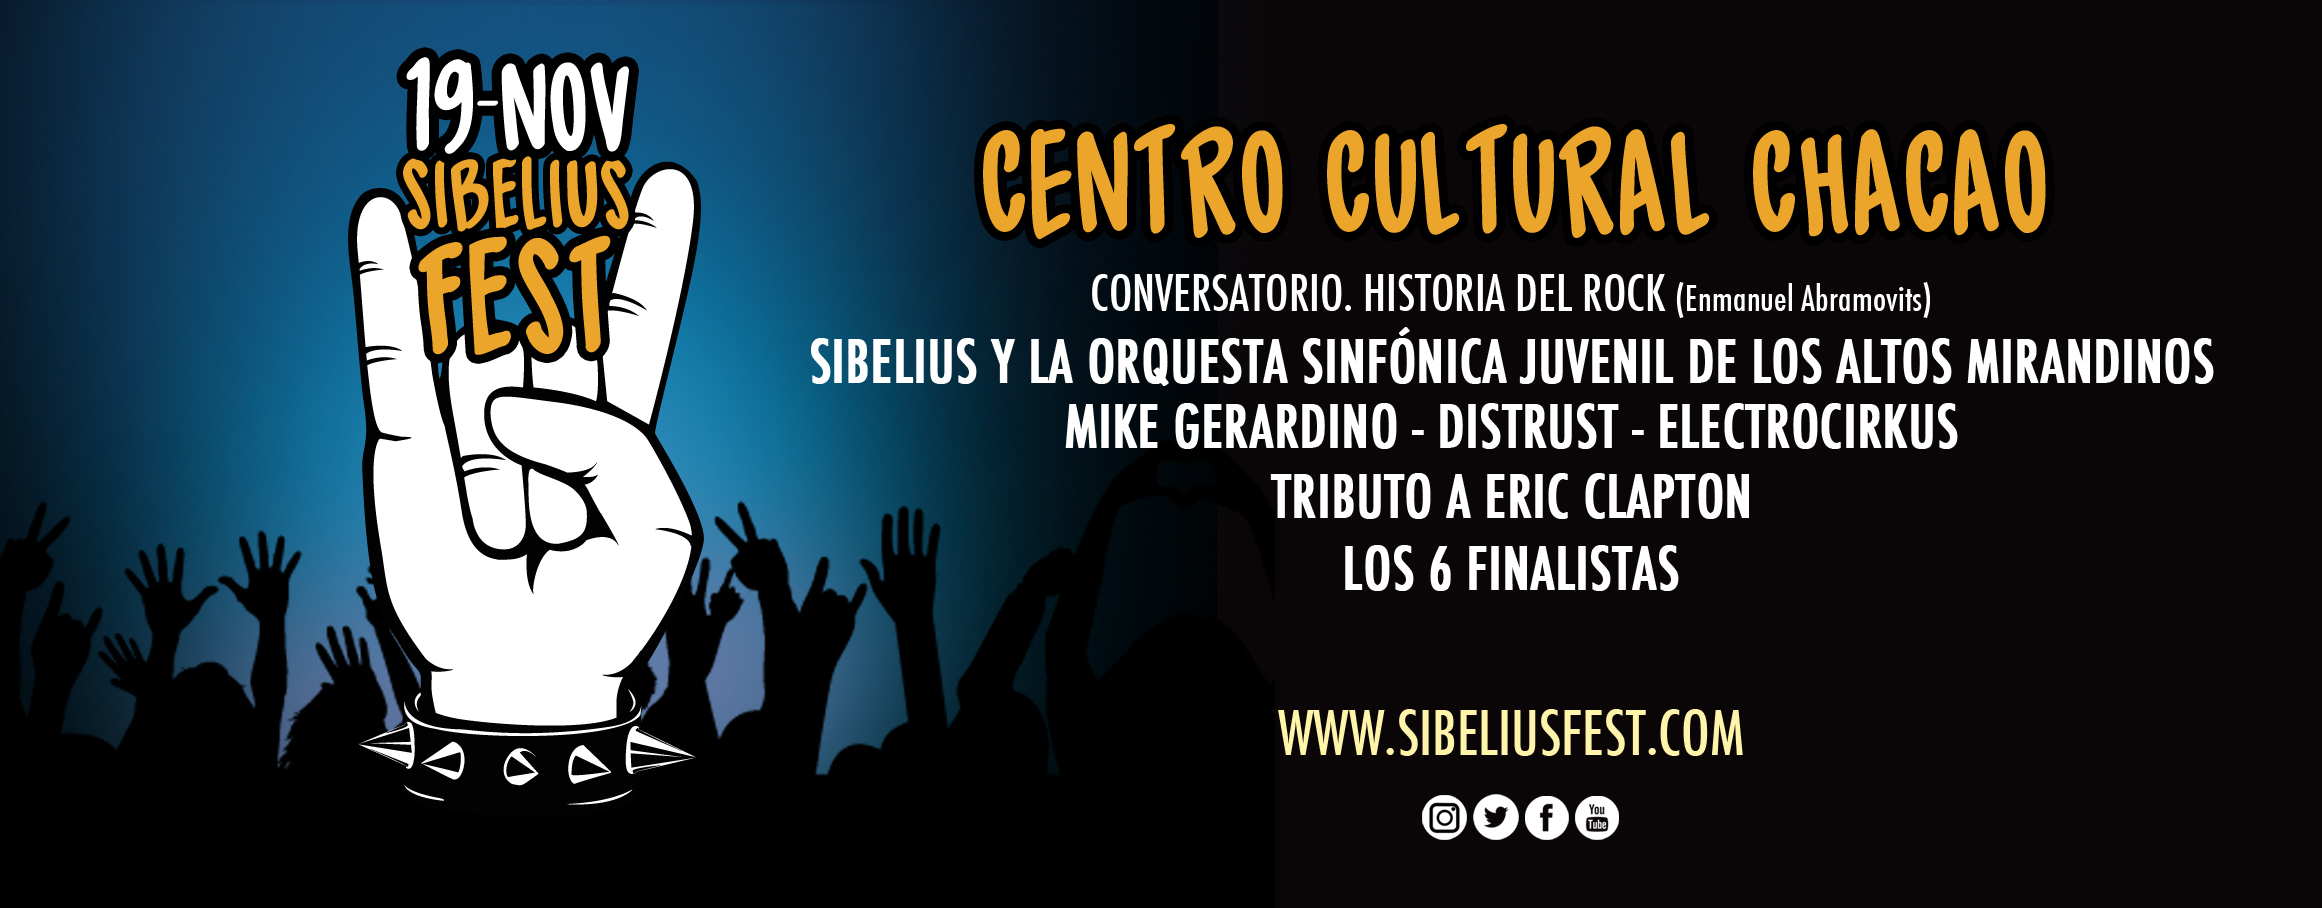 Llega la VIII edición Sibelius Fest Venezuela al Centro Cultural Chacao